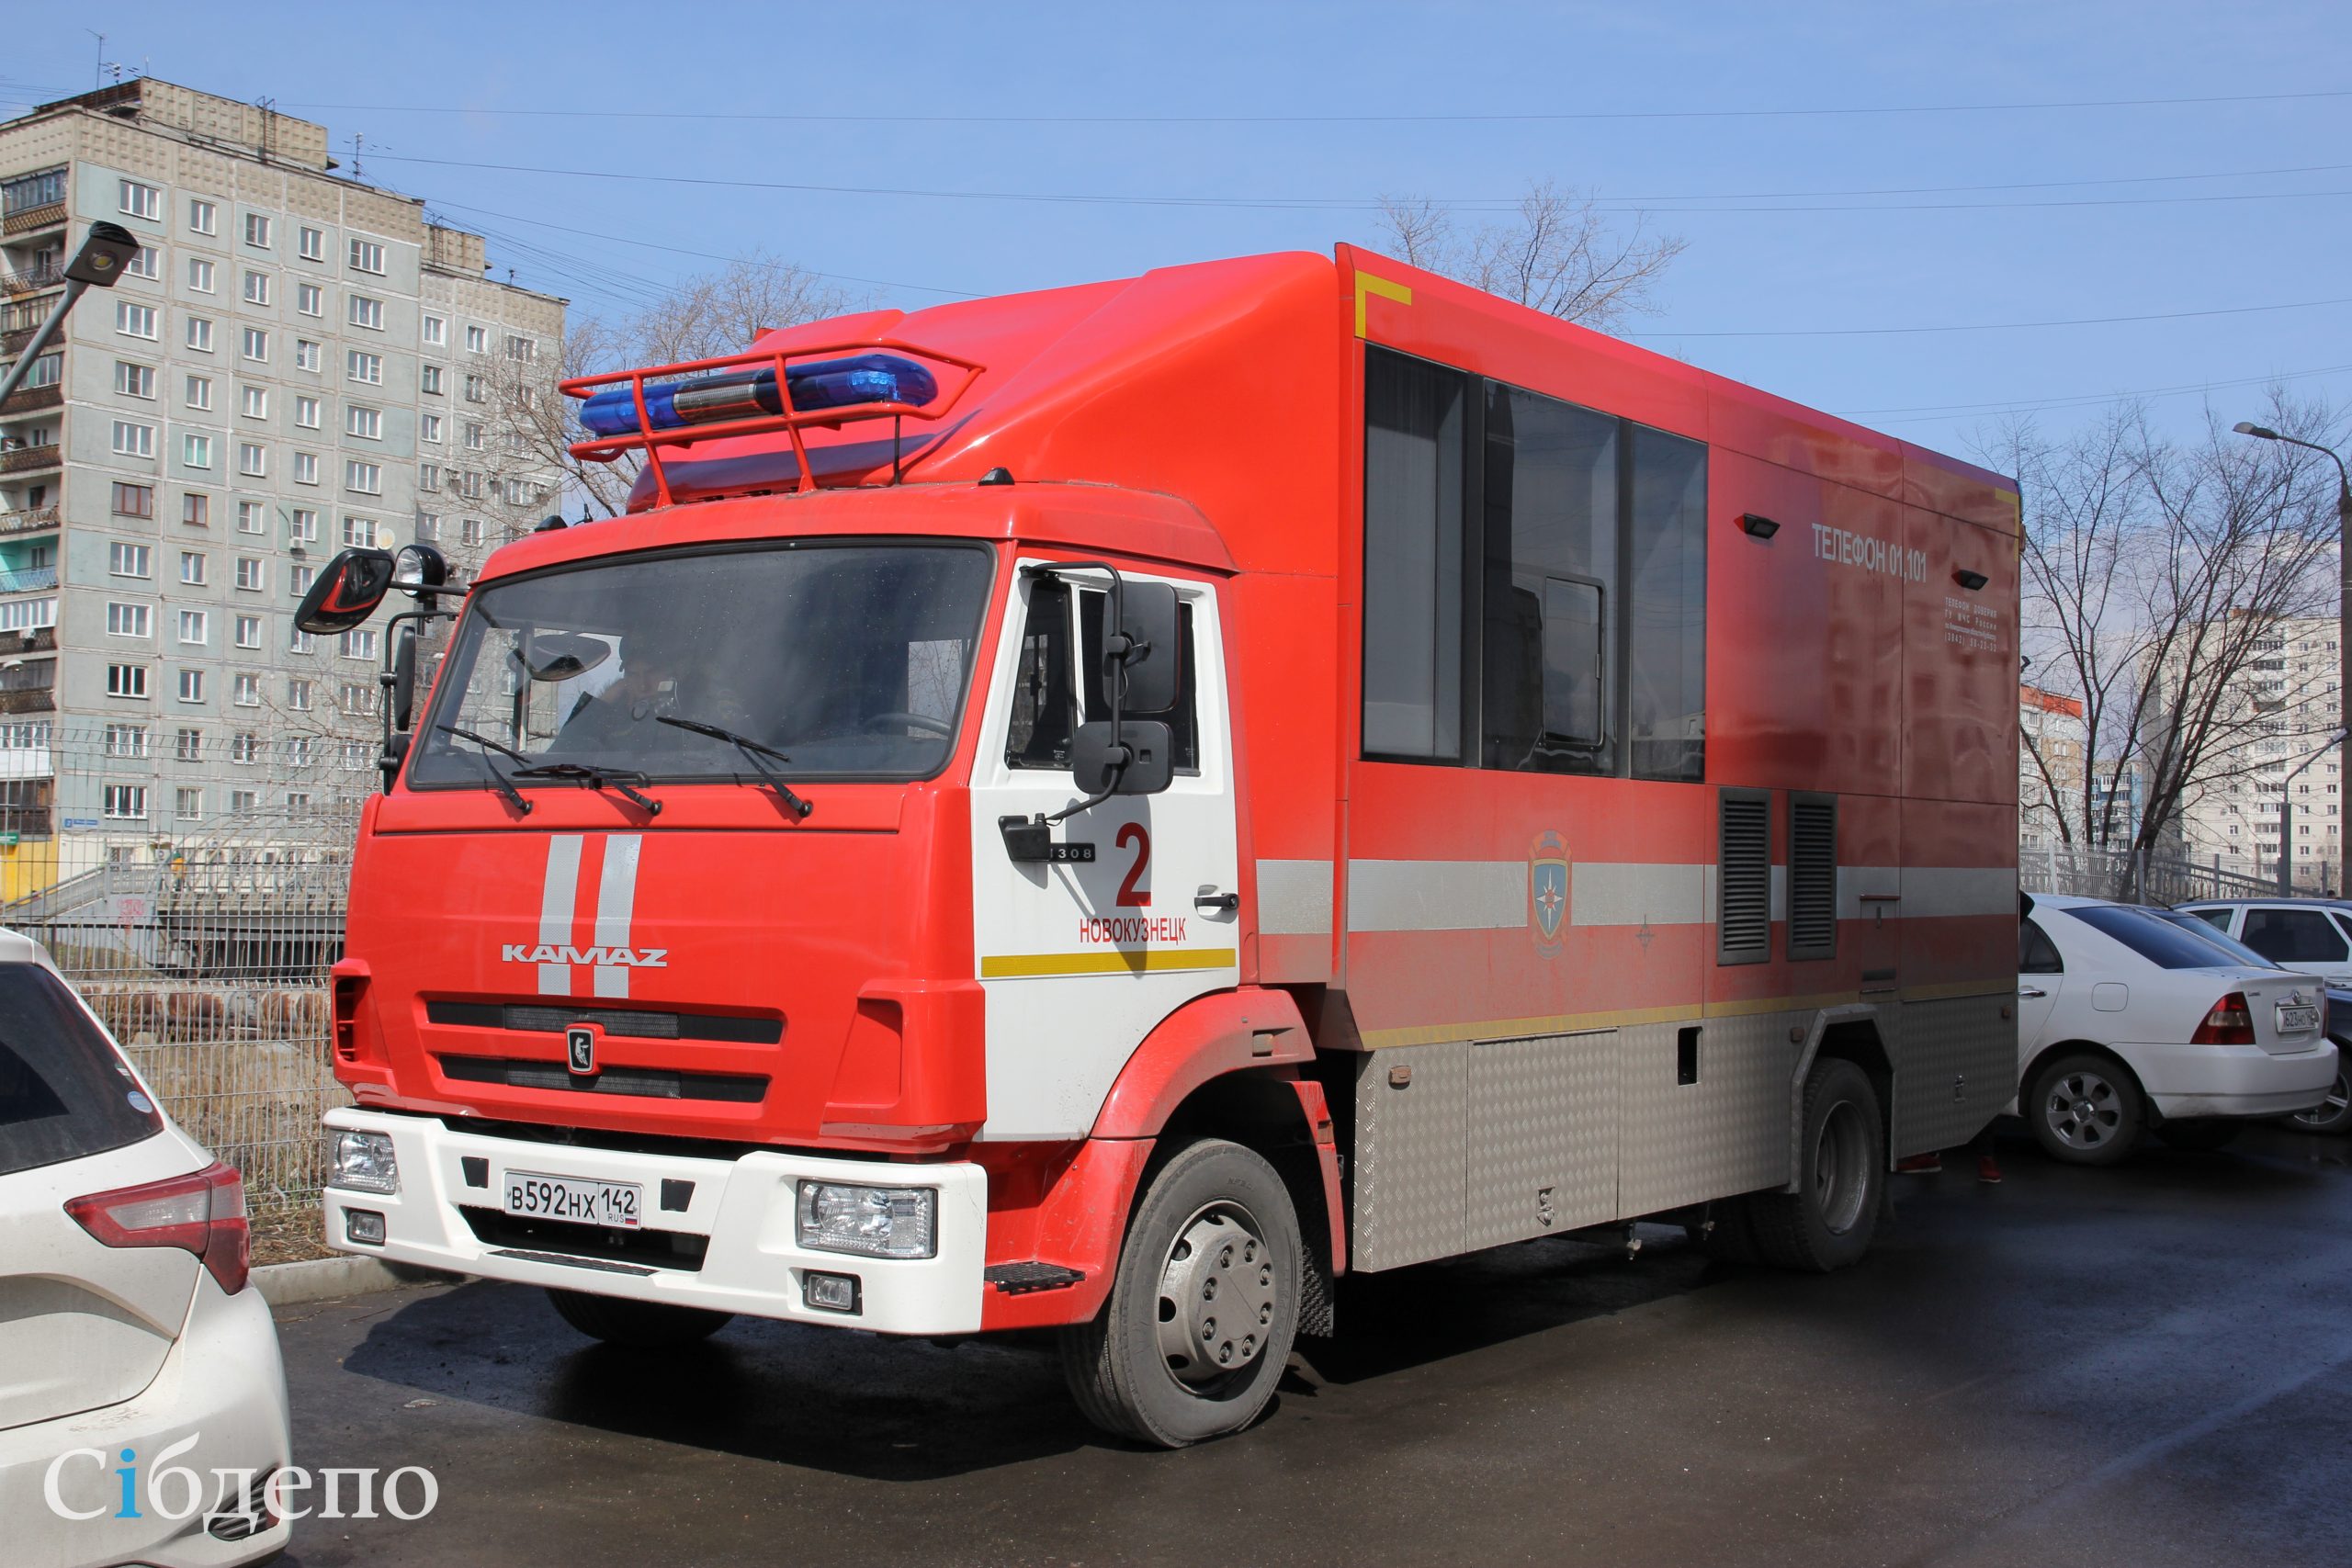 Из ТЦ в центре крупного города Кузбасса эвакуируют людей